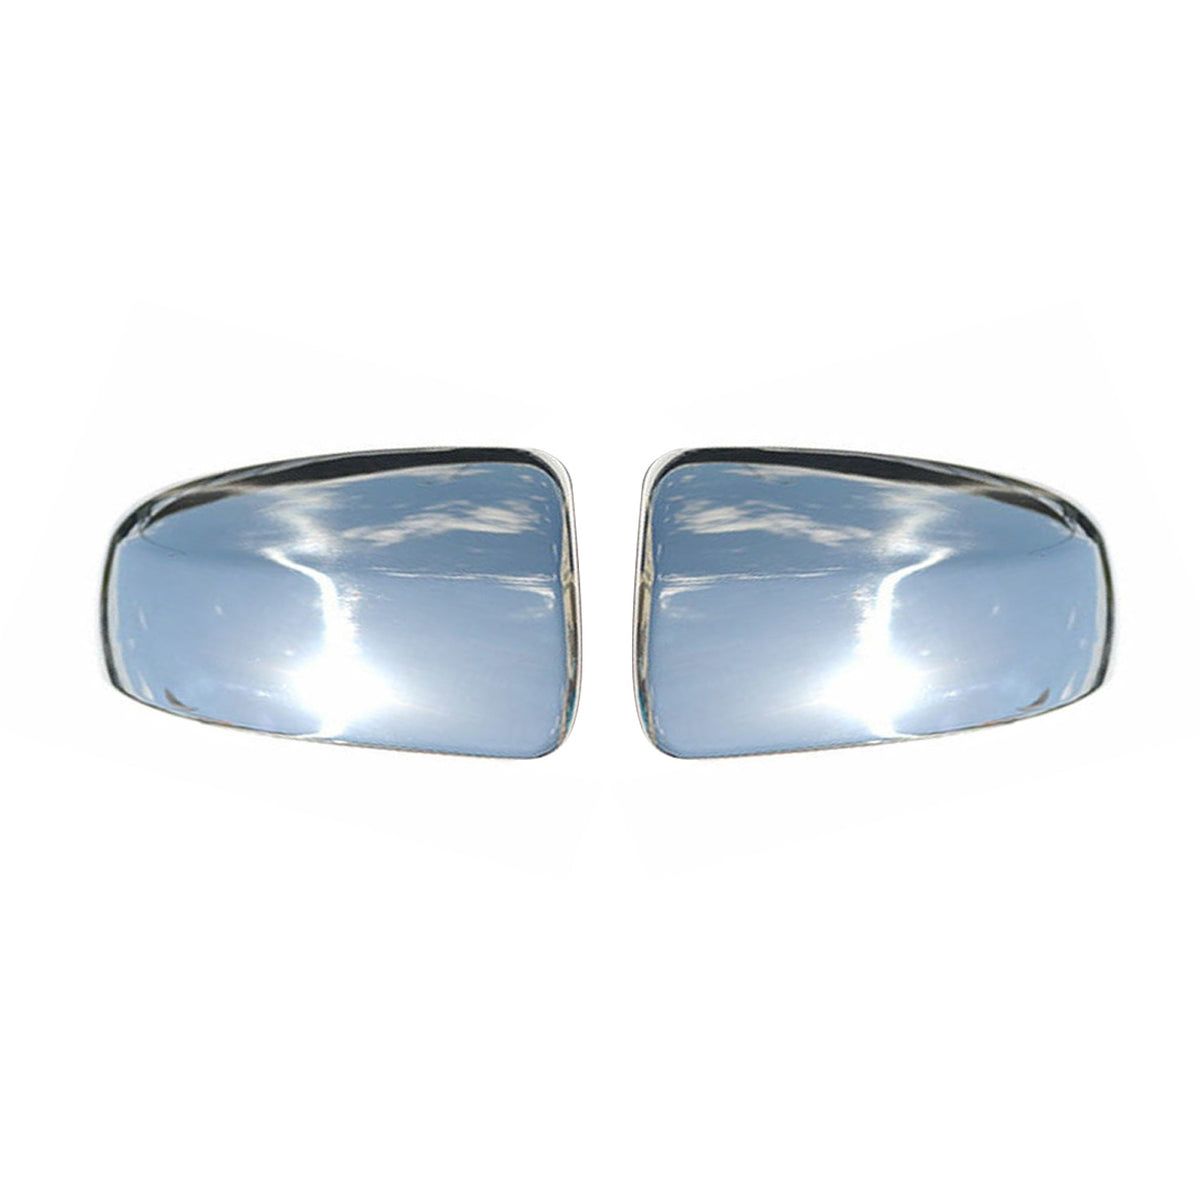 Spiegelkappen Spiegelabdeckung für Mercedes Vito W639 2010-2014 Edelstahl Silber